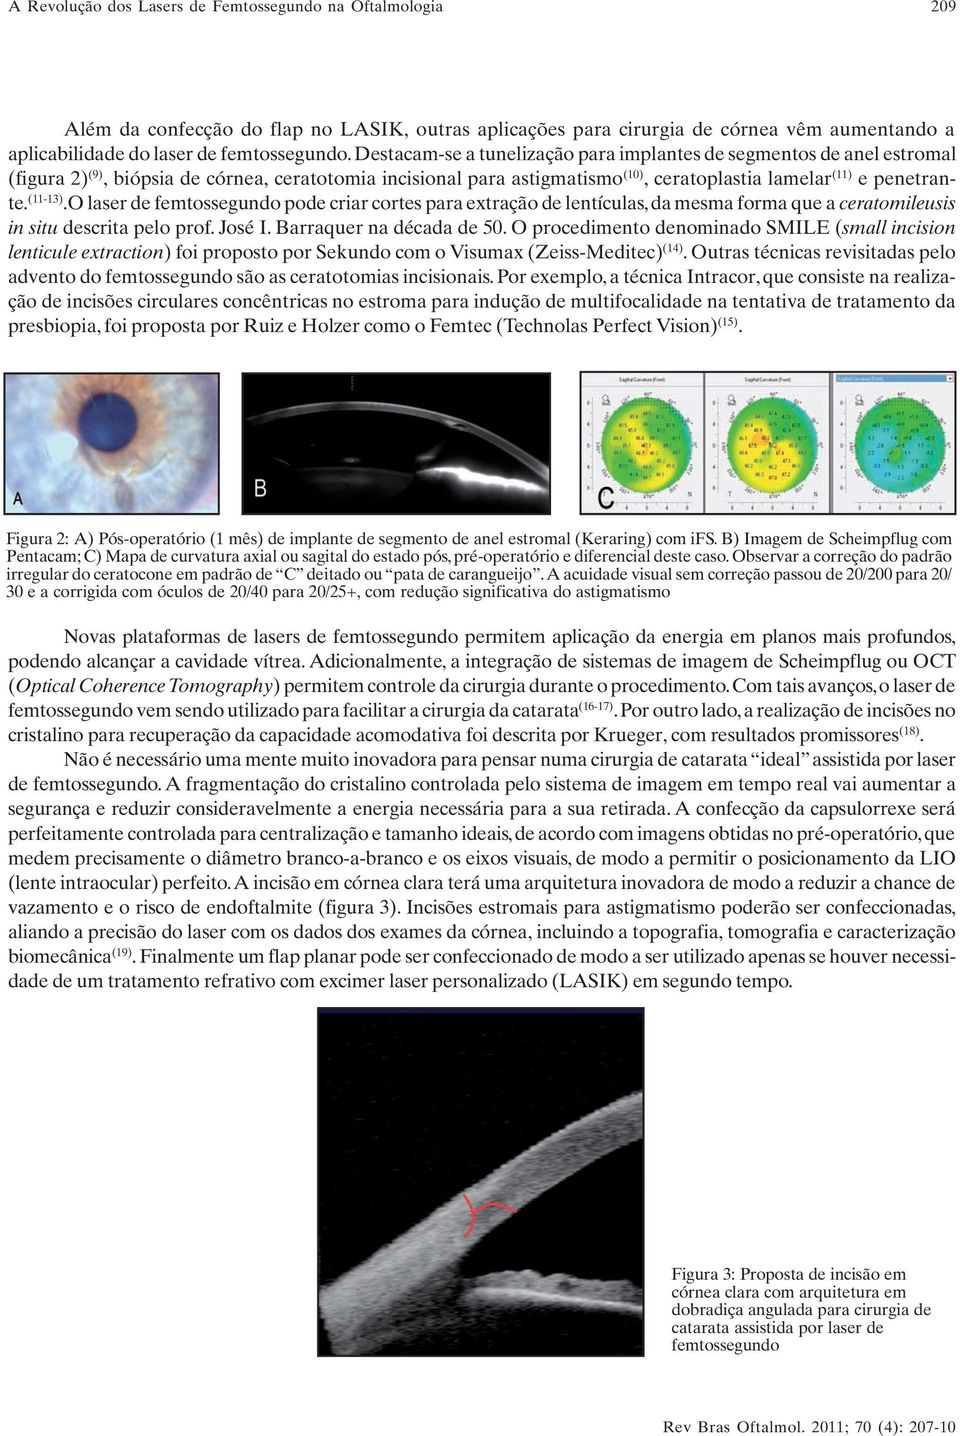 (11-13).O laser de femtossegundo pode criar cortes para extração de lentículas, da mesma forma que a ceratomileusis in situ descrita pelo prof. José I. Barraquer na década de 50.